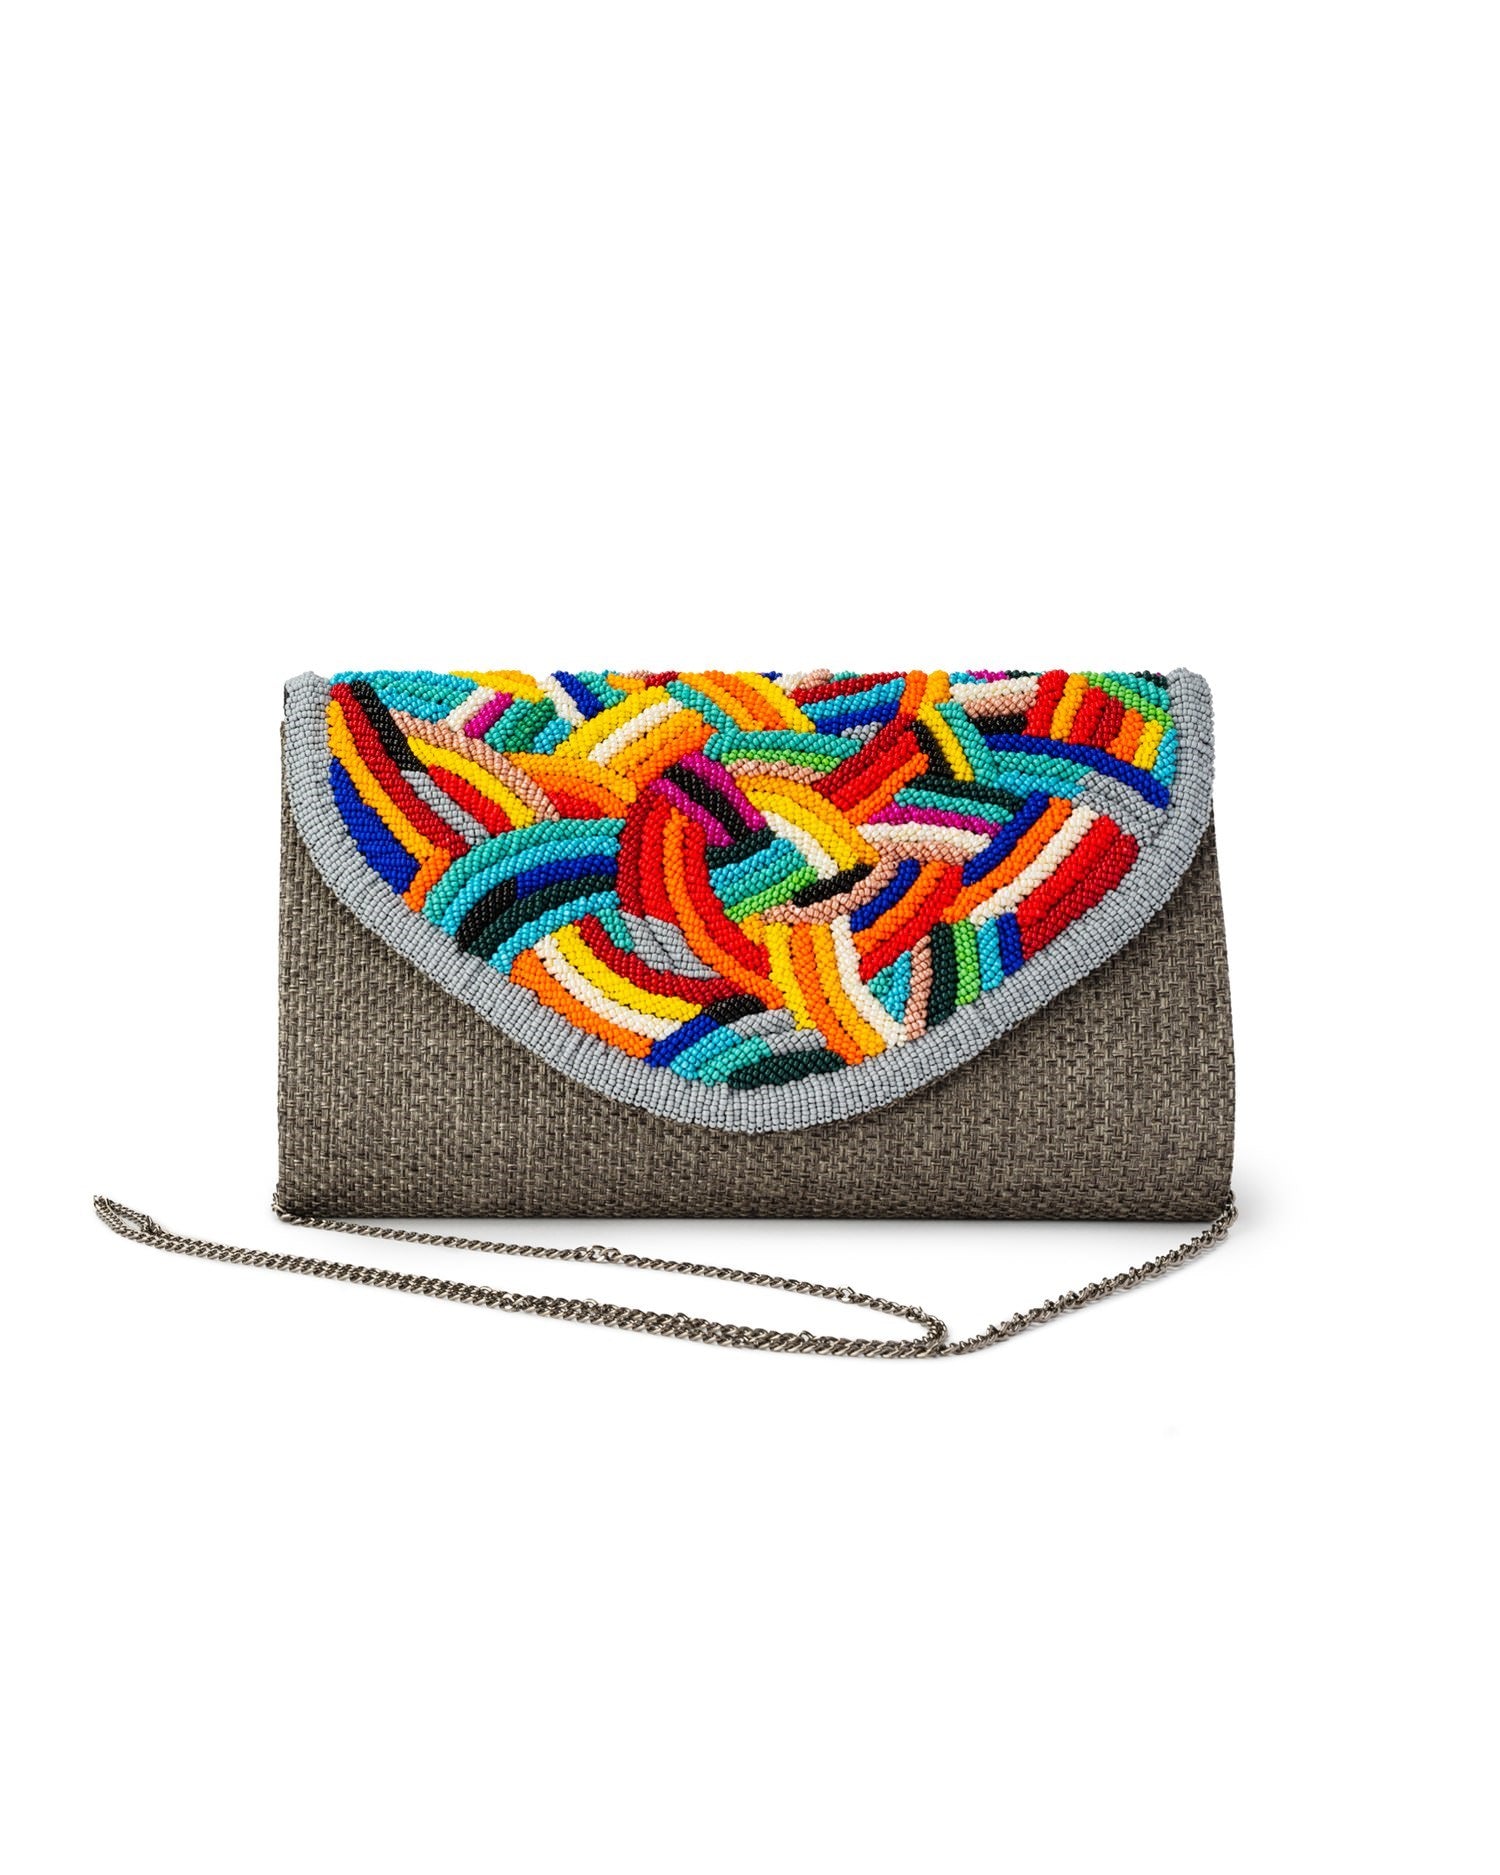 Borsa pochette in iuta grigia con perline in vetro multicolore - Mya Accessories